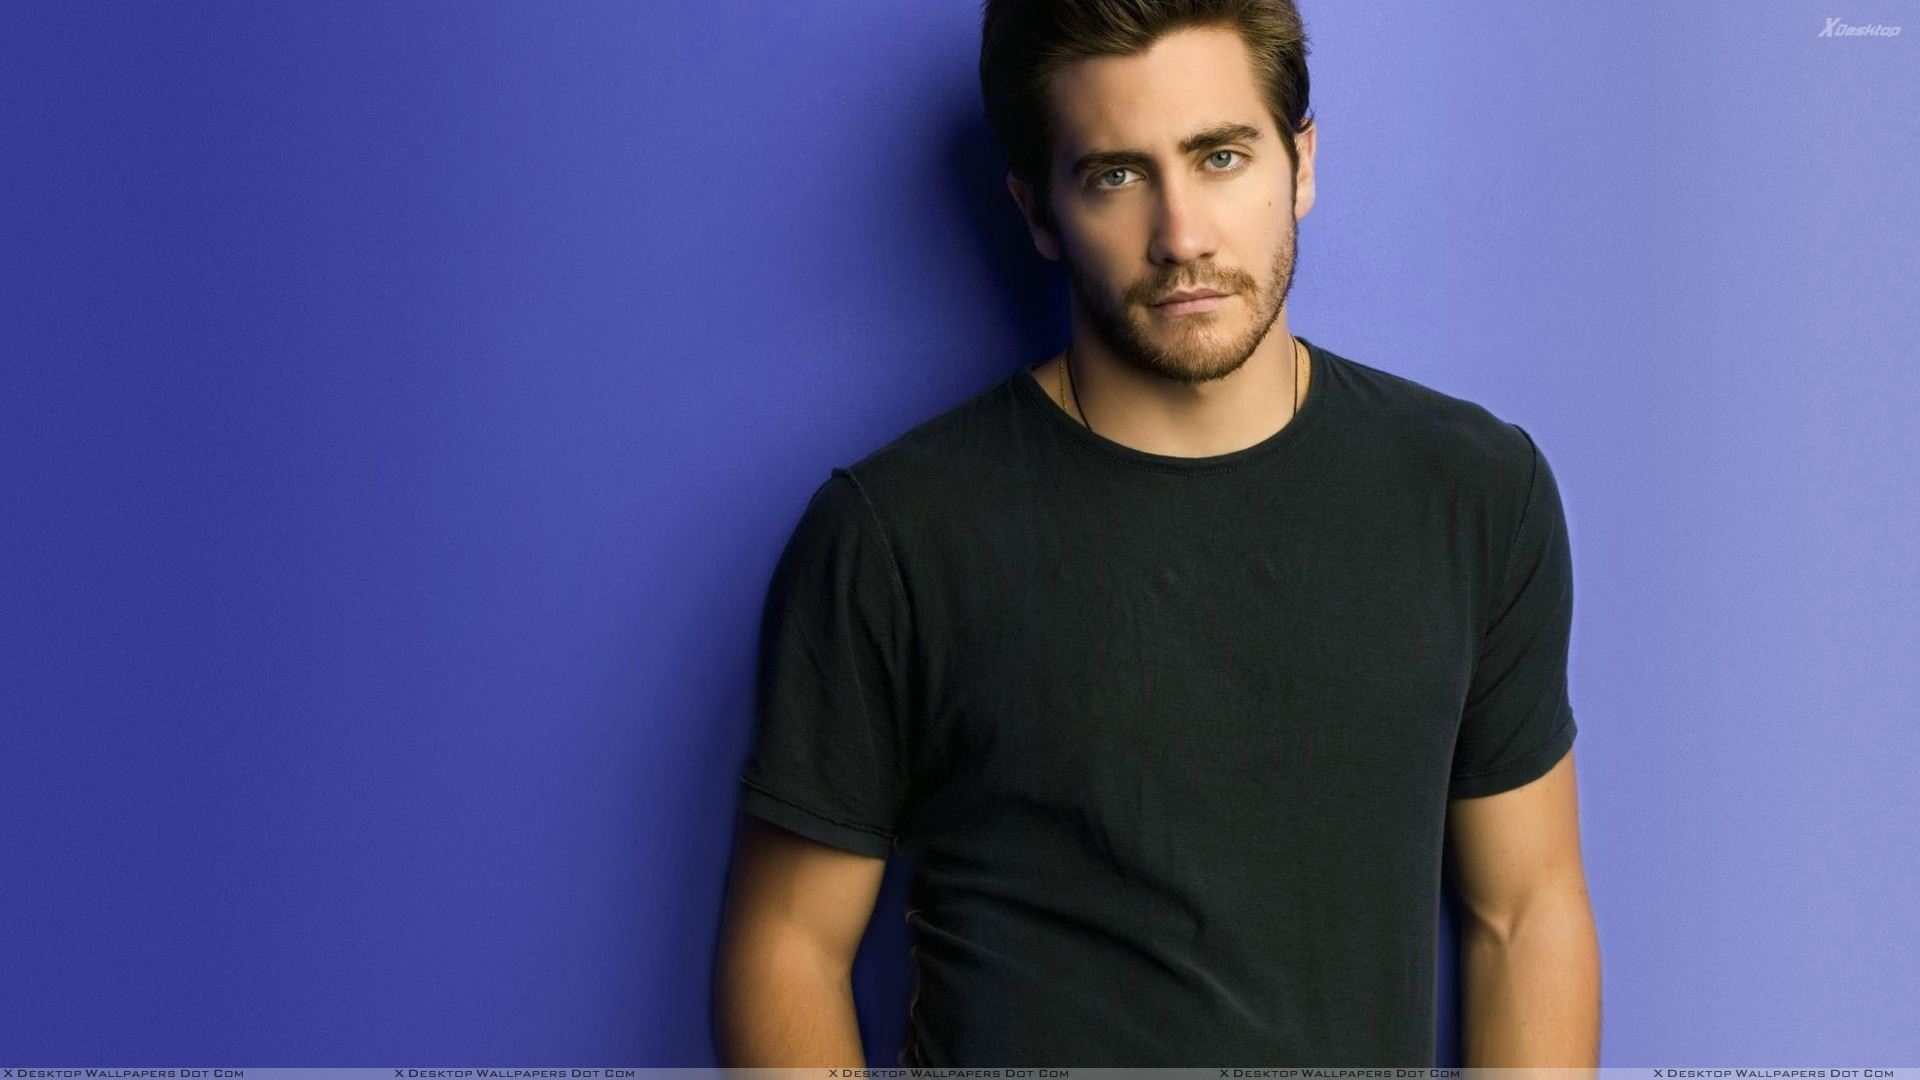 Jake Gyllenhaal Looking Smart In Black T Shirt N Blue Background